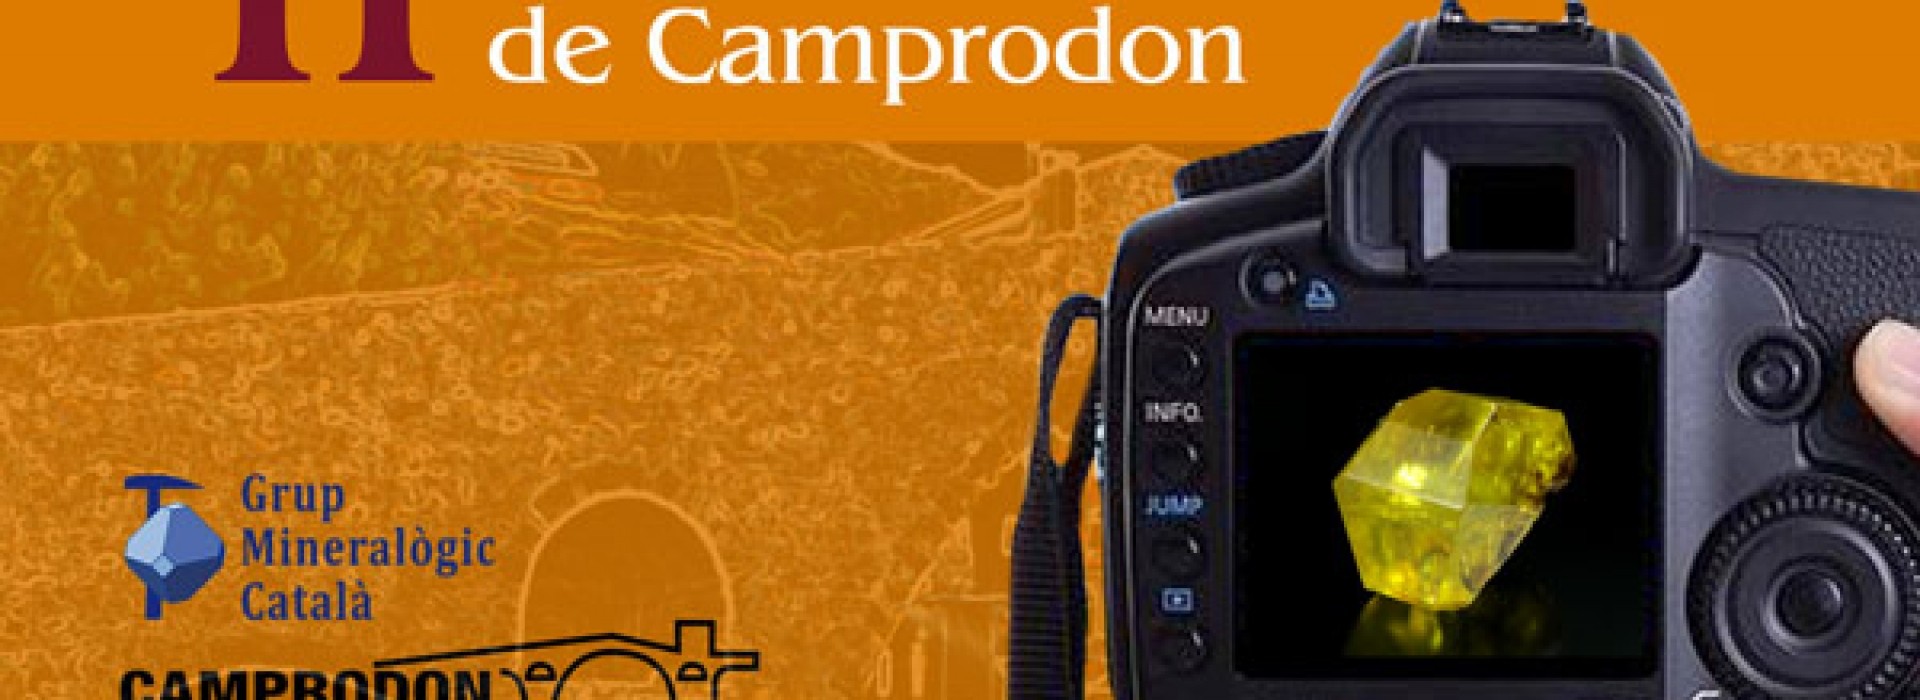 II Concurso de fotografía geológica y paisajística de Camprodon